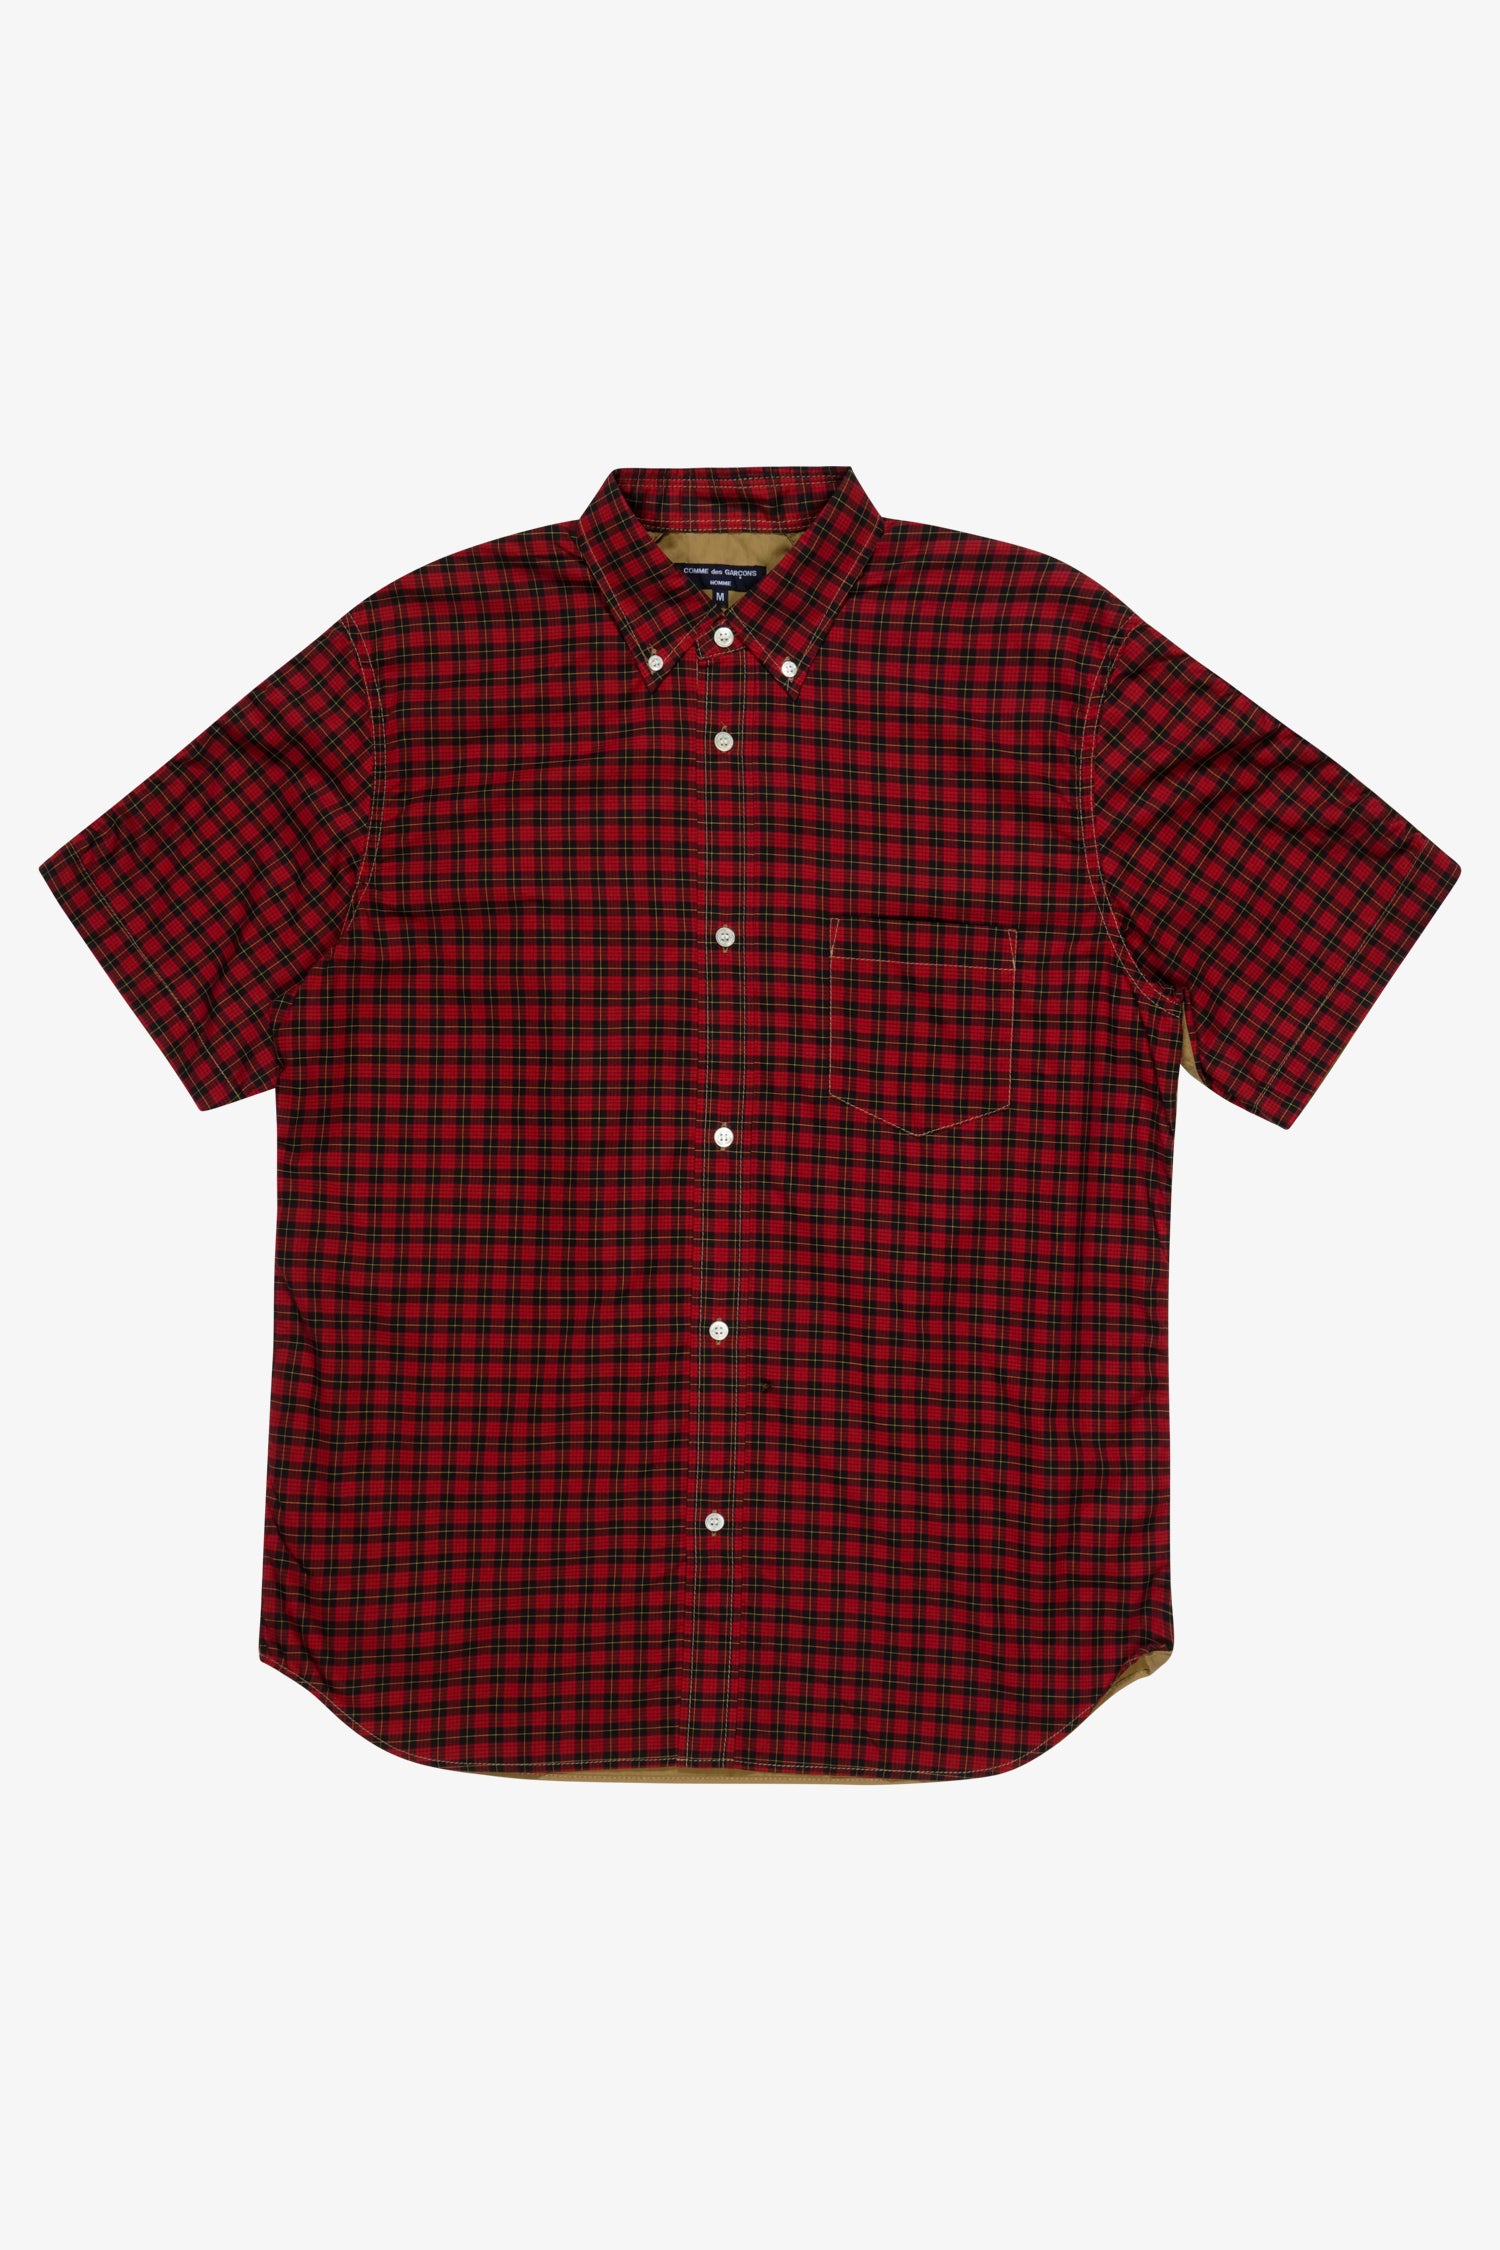 Selectshop FRAME - COMME DES GARÇONS HOMME Checked Shirt Shirt Dubai